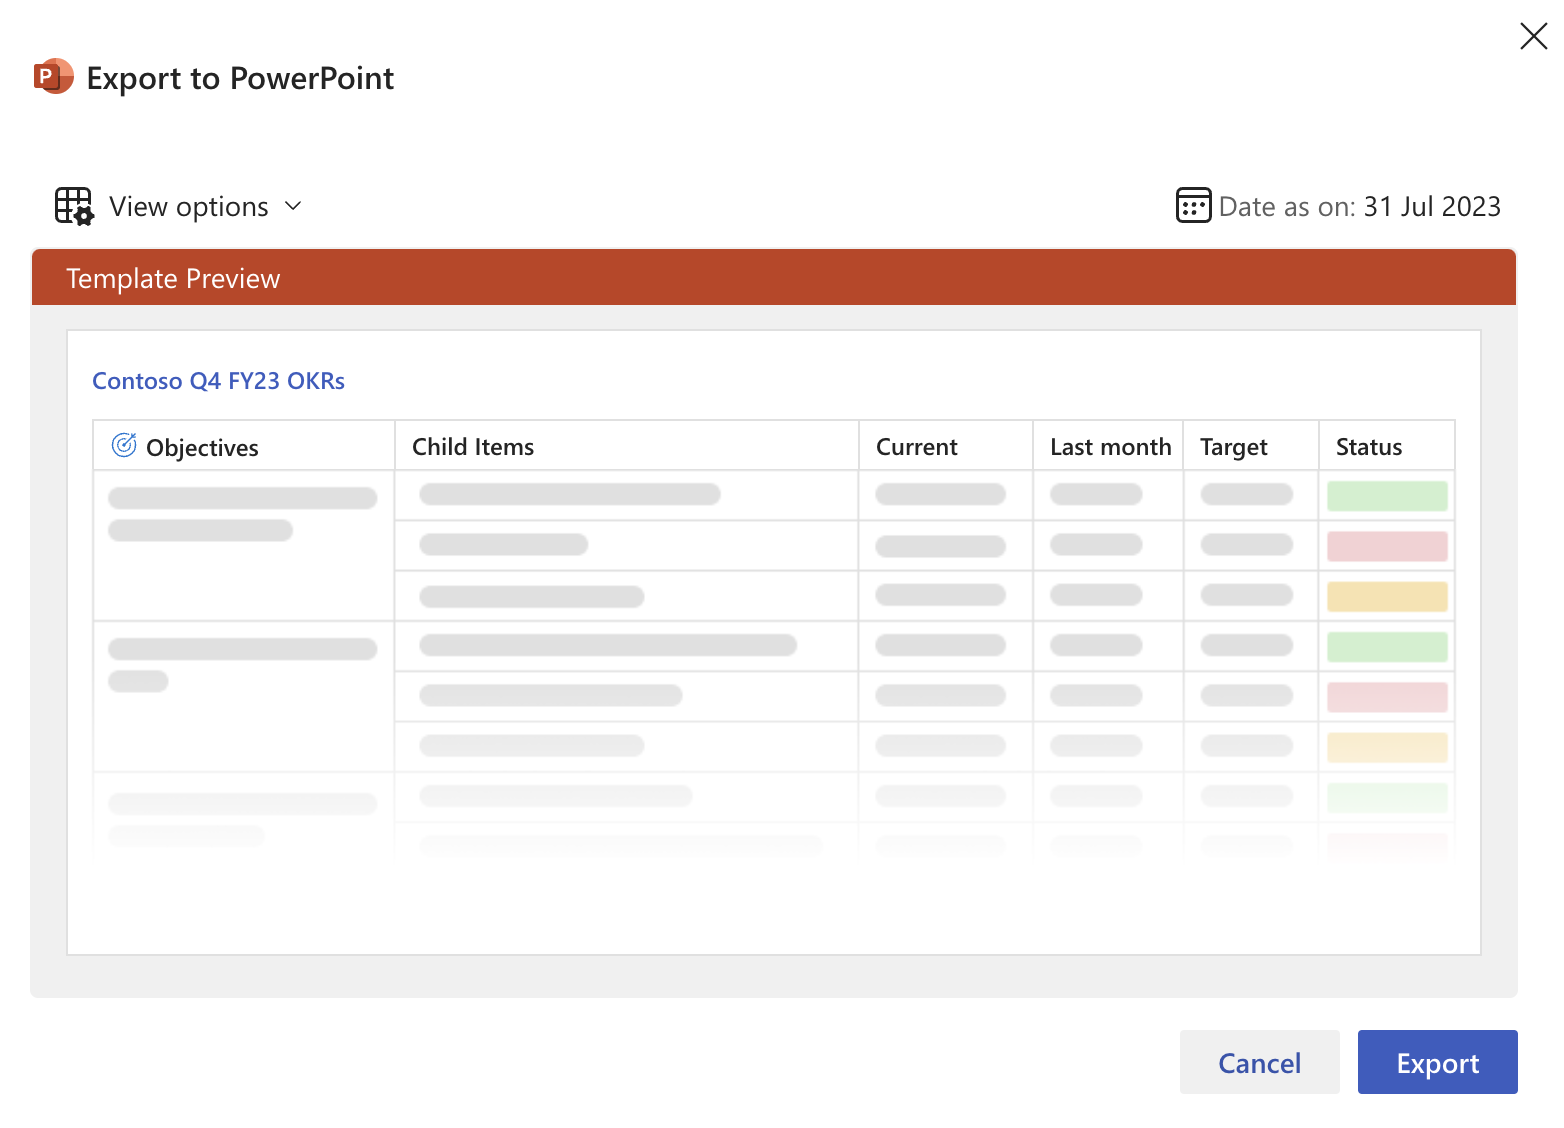 Екранна снимка на овърлей за експортиране на PowerPoint за избиране на шаблон.